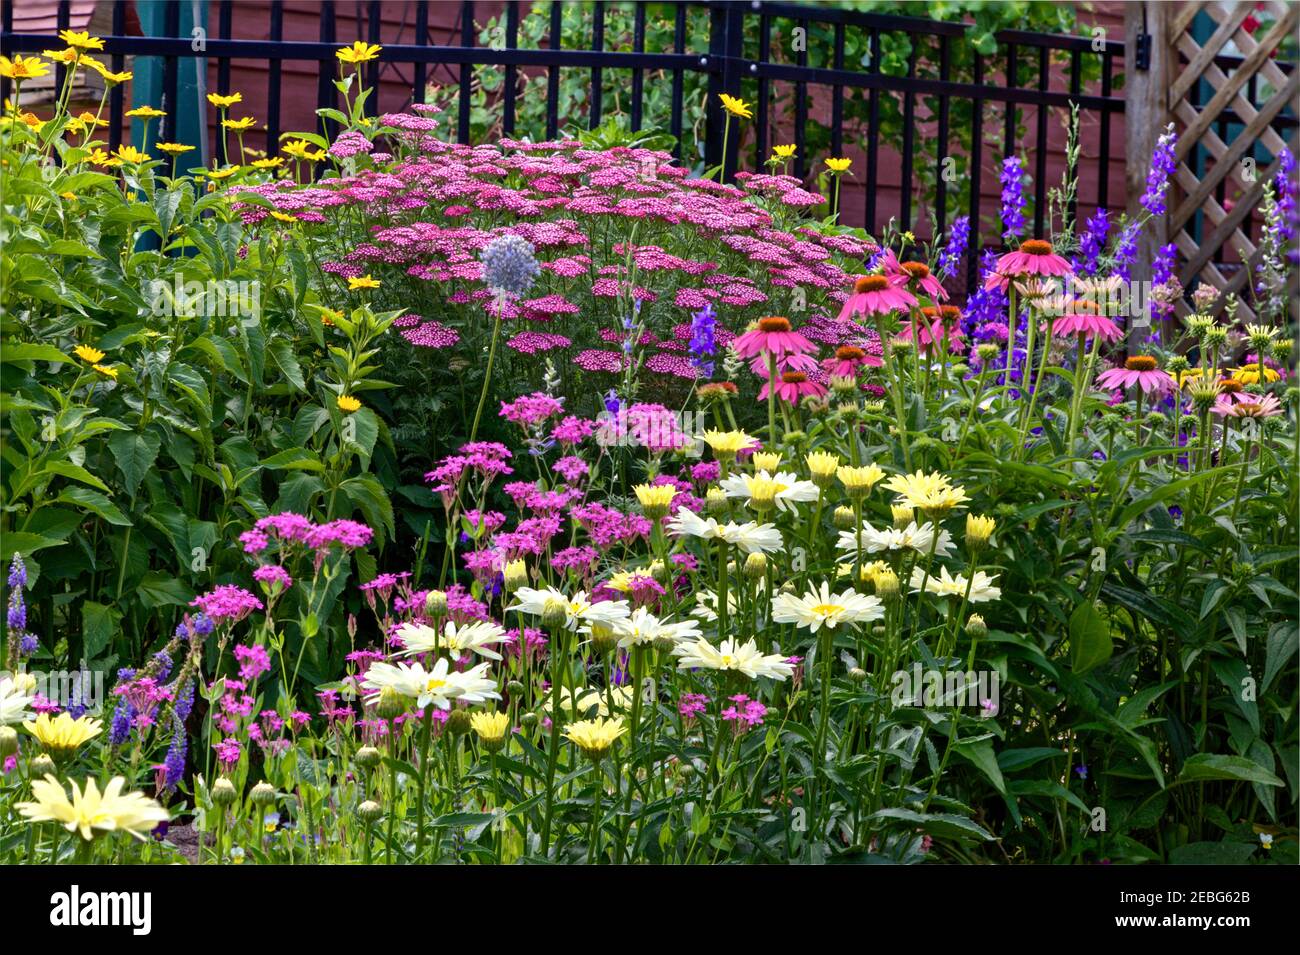 Una combinazione di piante perenni e annuali a metà estate rende una mostra showy quando in piena fioritura. Foto Stock